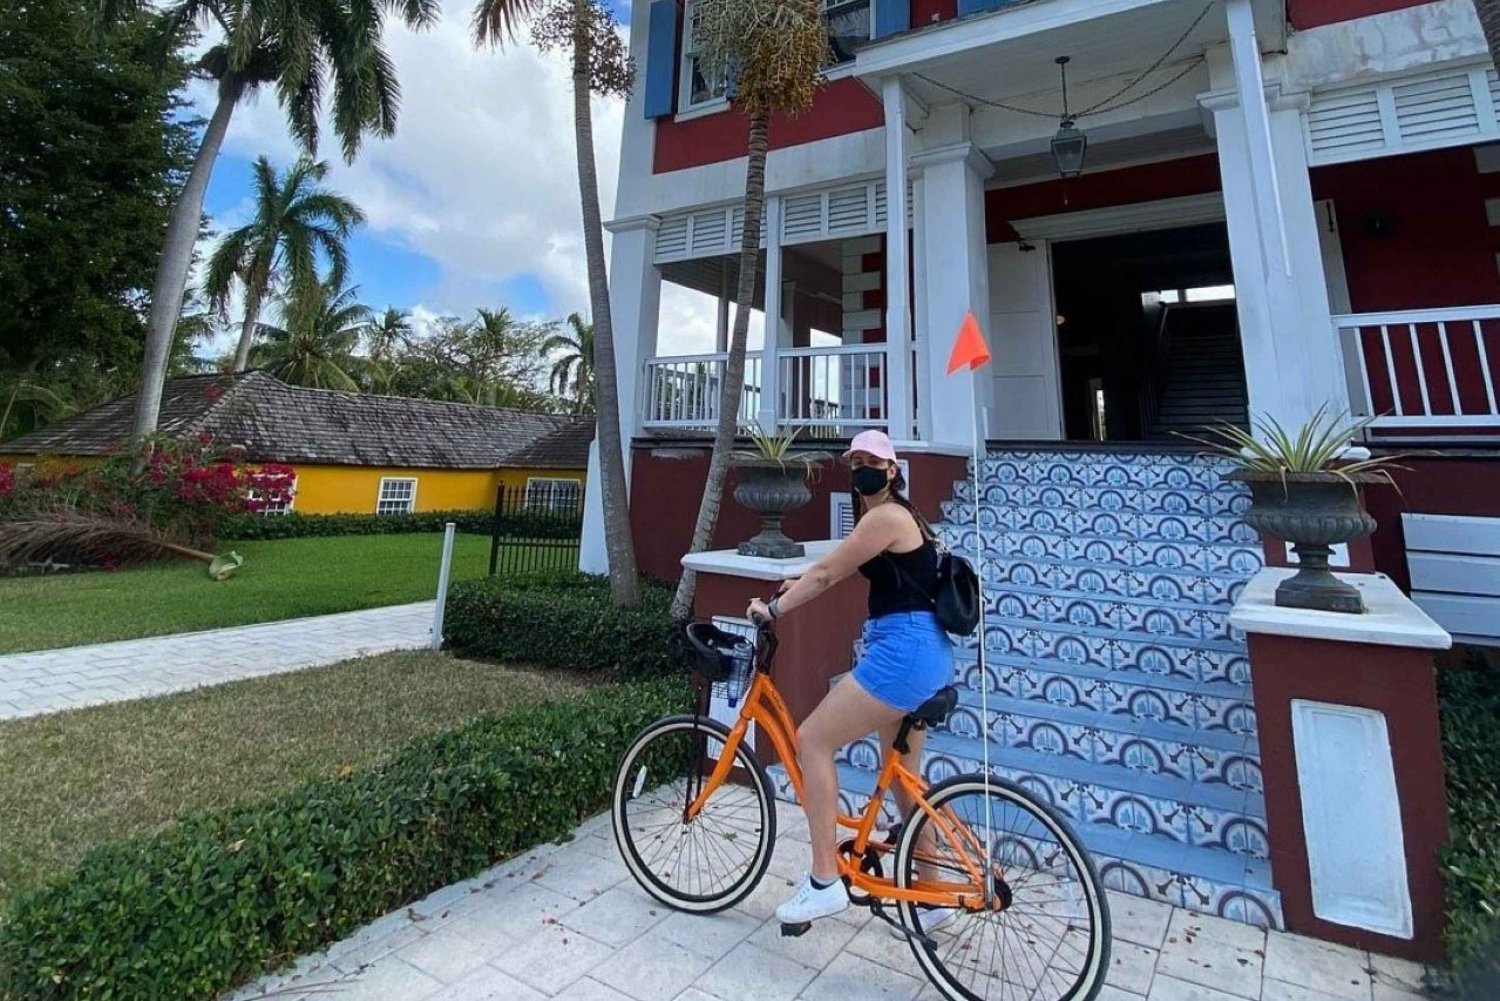 Nassau: Historische Fahrradtour durch die Innenstadt von Nassau